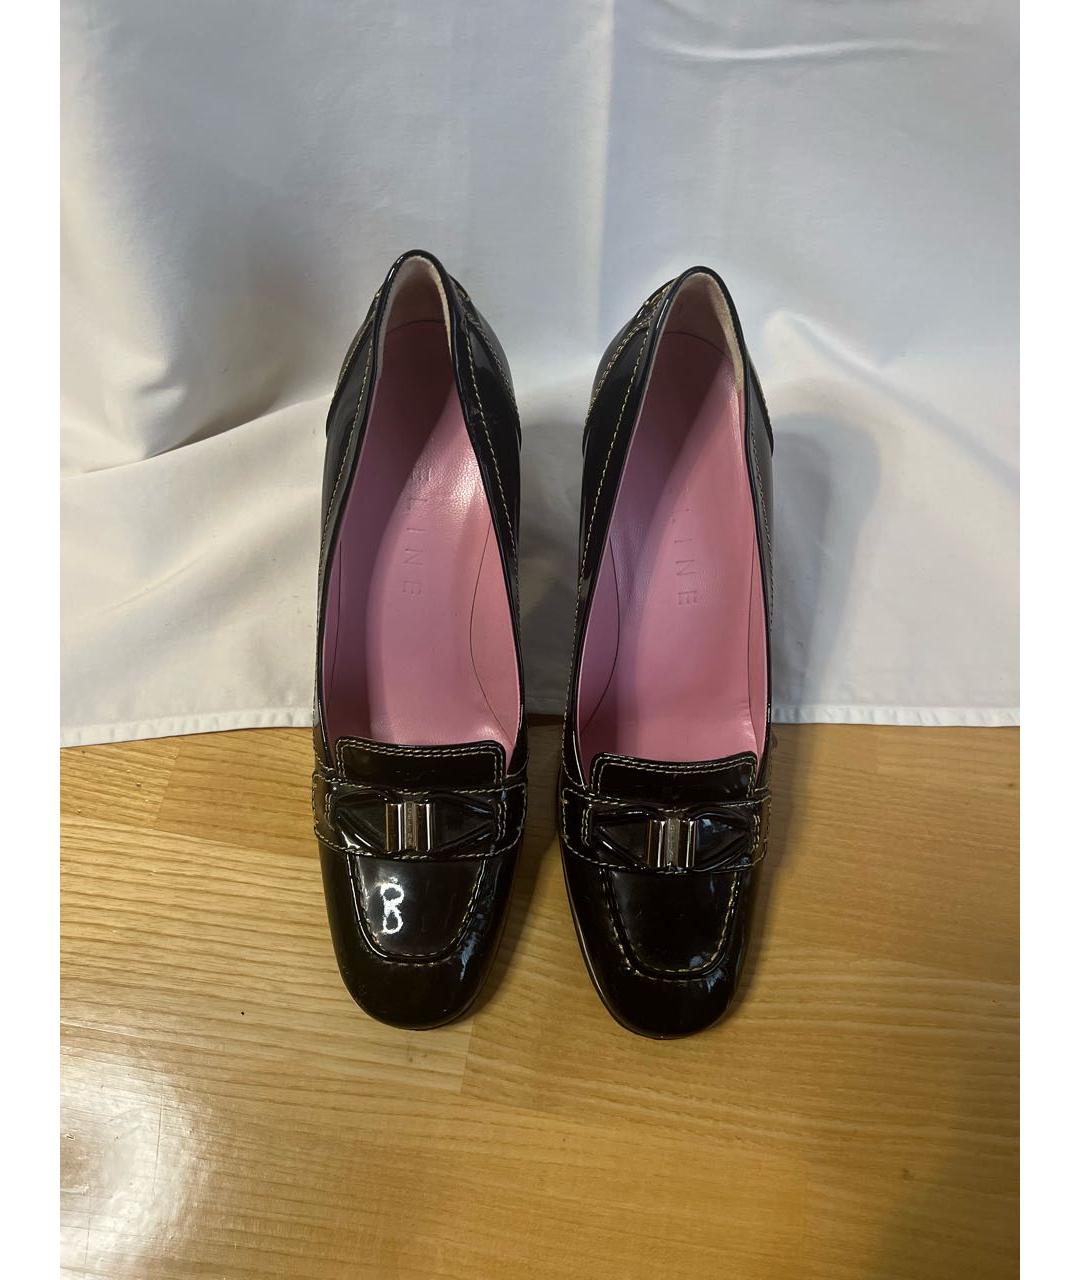 CELINE PRE-OWNED Черные туфли из лакированной кожи, фото 2